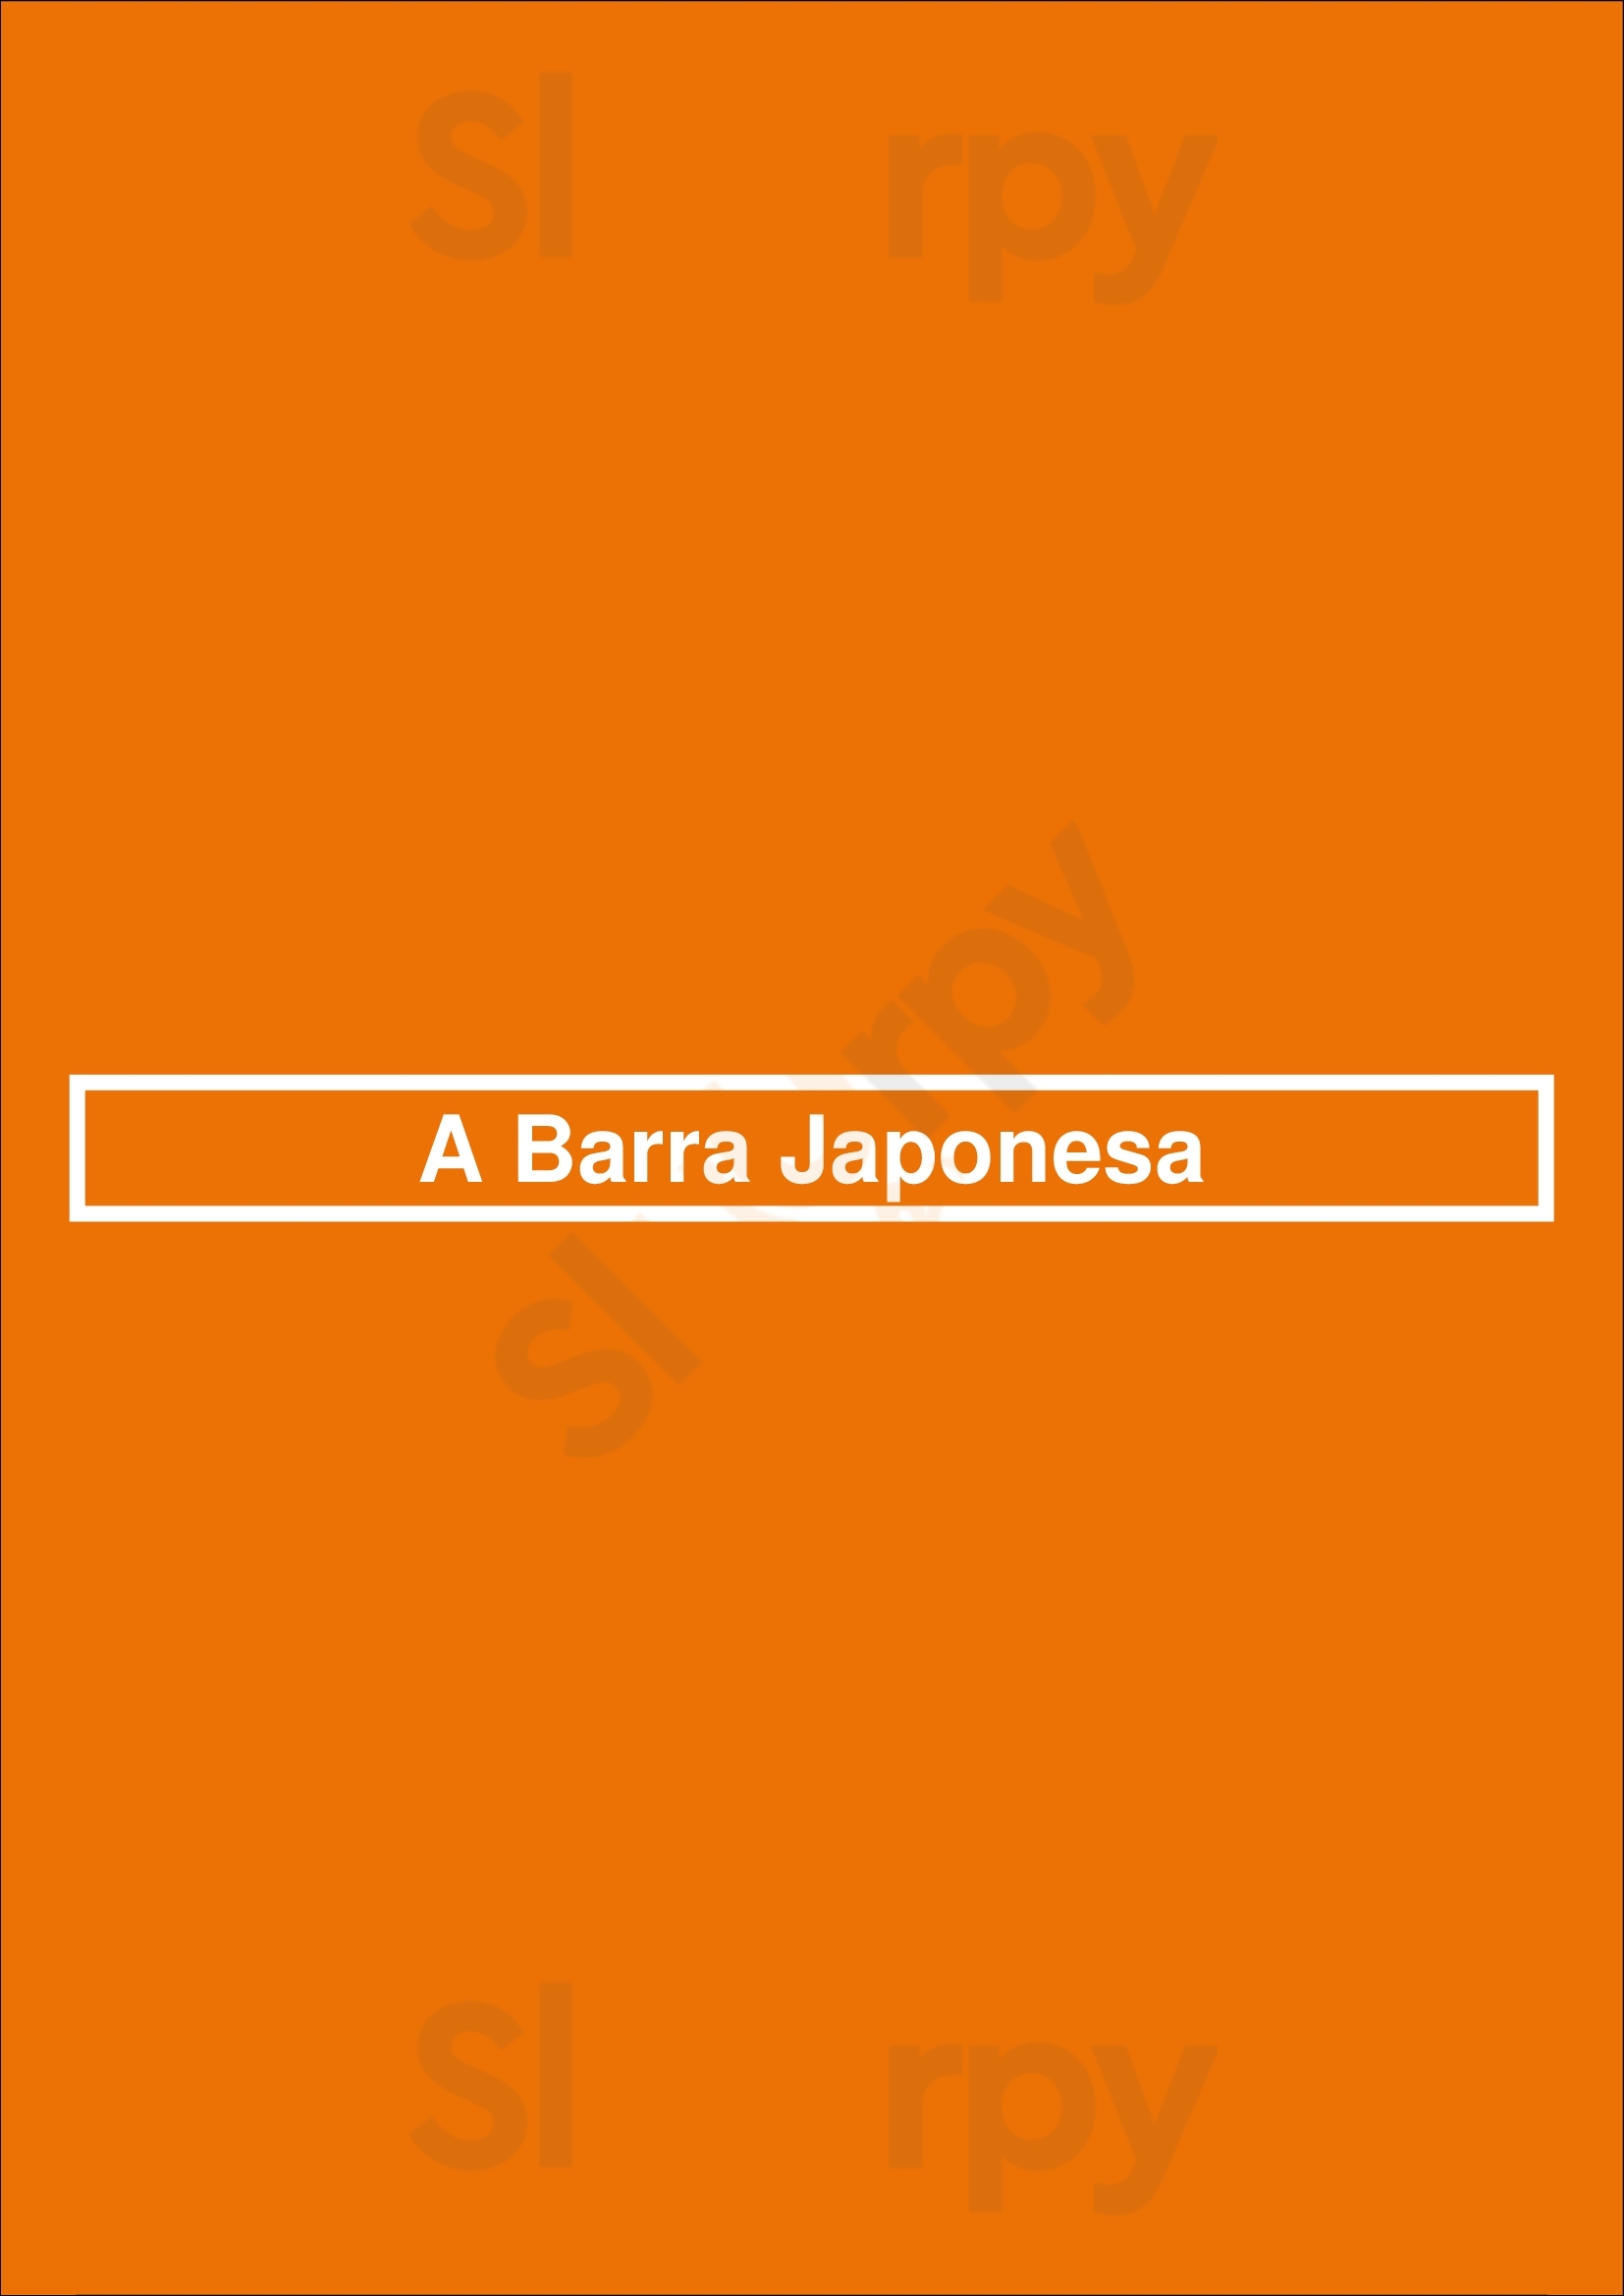 A Barra Japonesa Lisboa Menu - 1